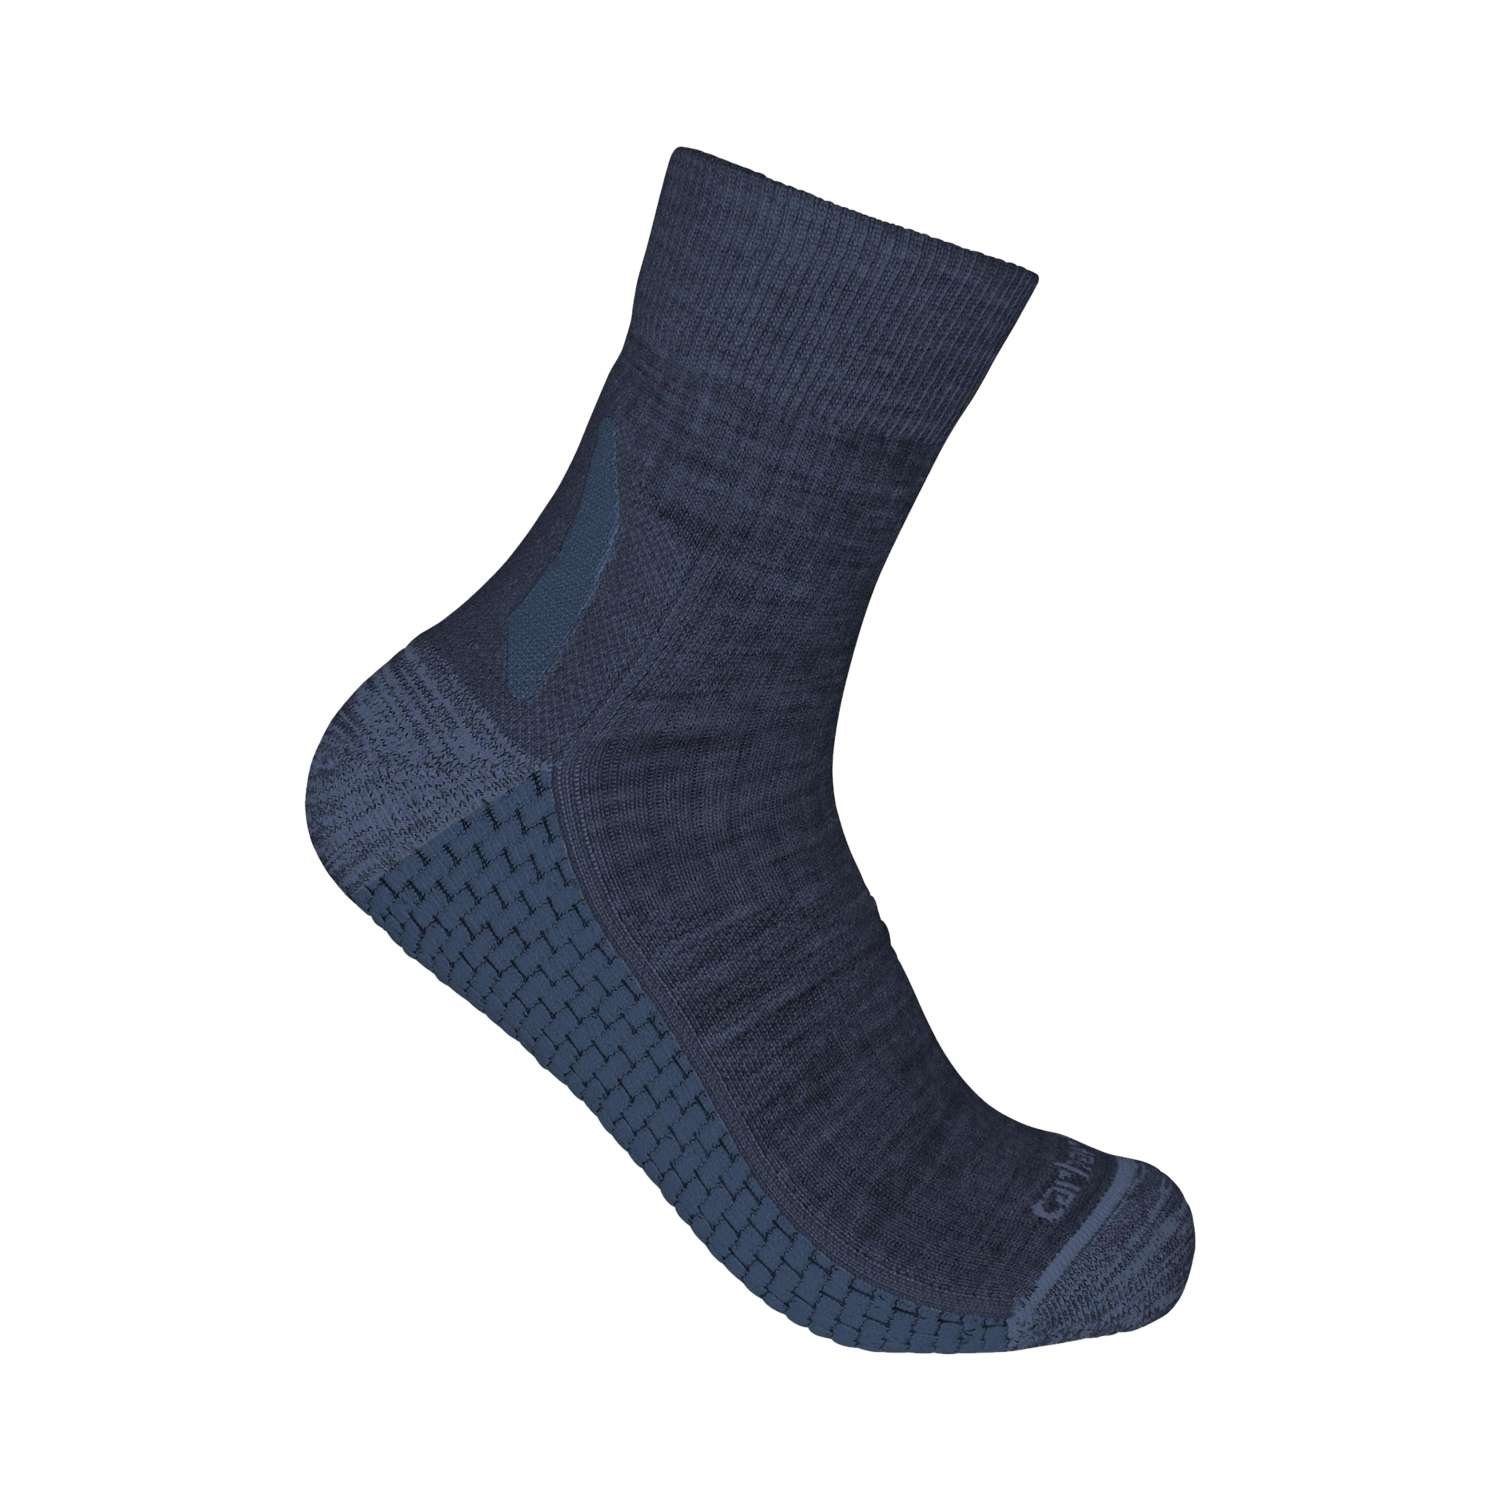 Carhartt Socken Carhartt Unisex Socken Synthetic-Merino Wool Quarter navy heather